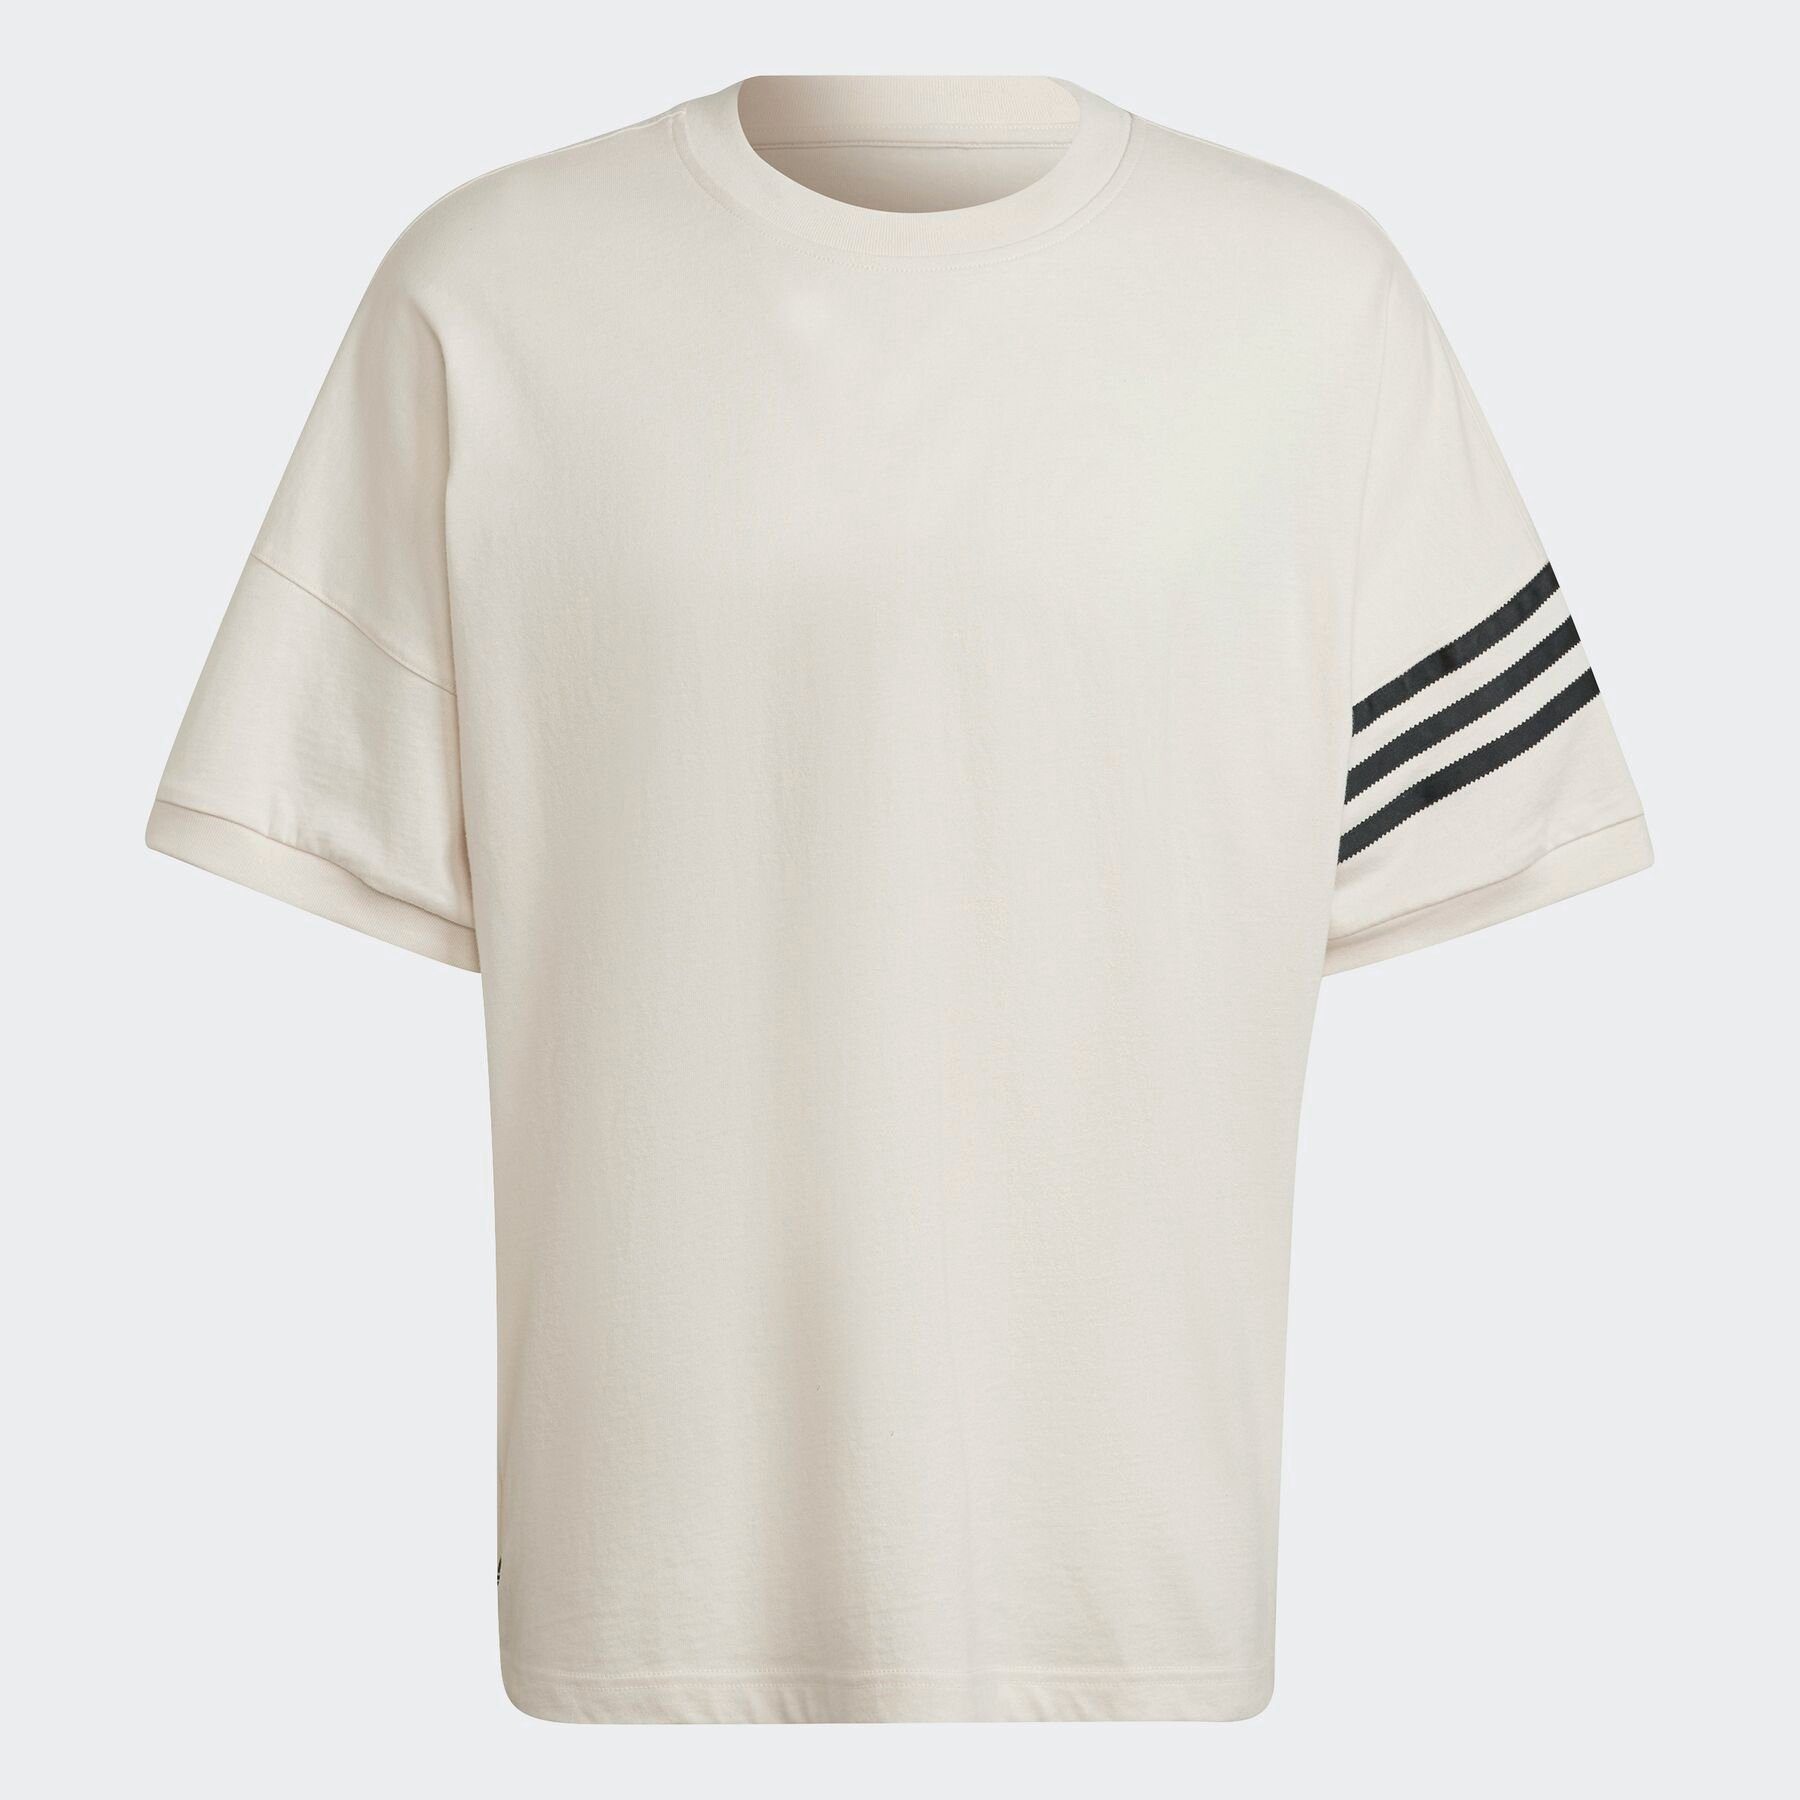 T-Shirt White ADICOLOR NEUCLASSICS adidas Originals Wonder